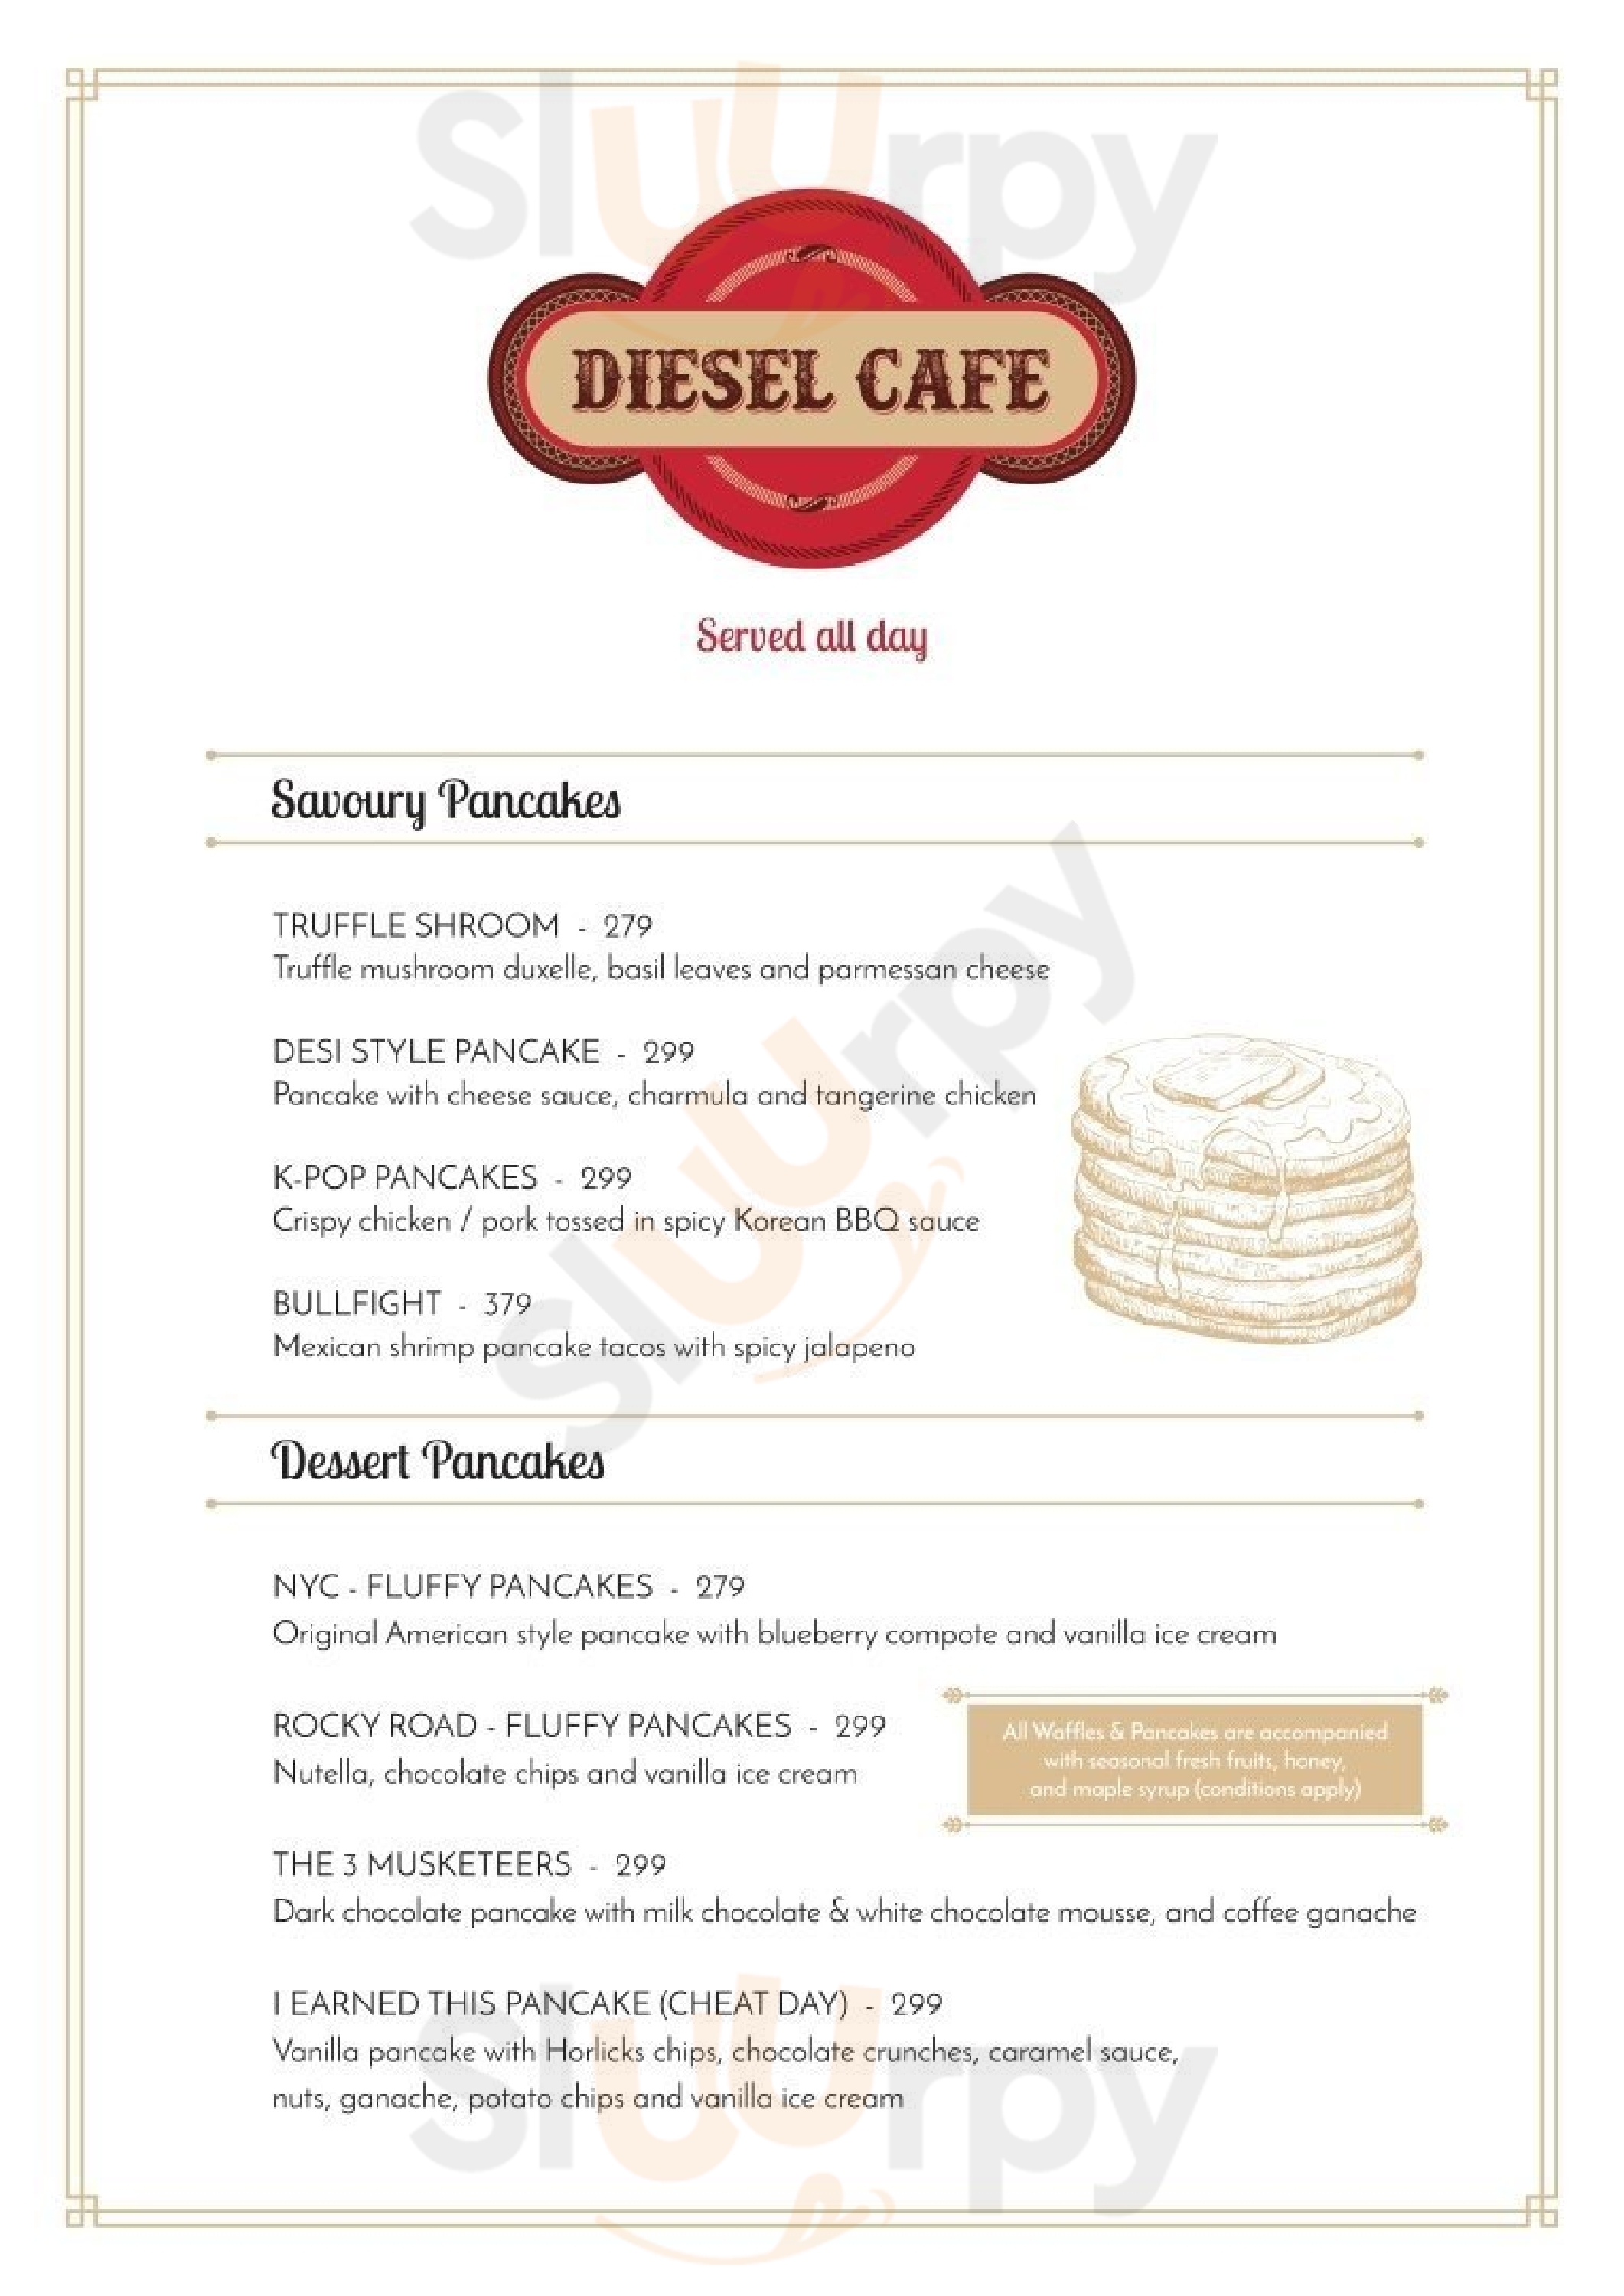 Diesel Cafe Mangalore Menu - 1